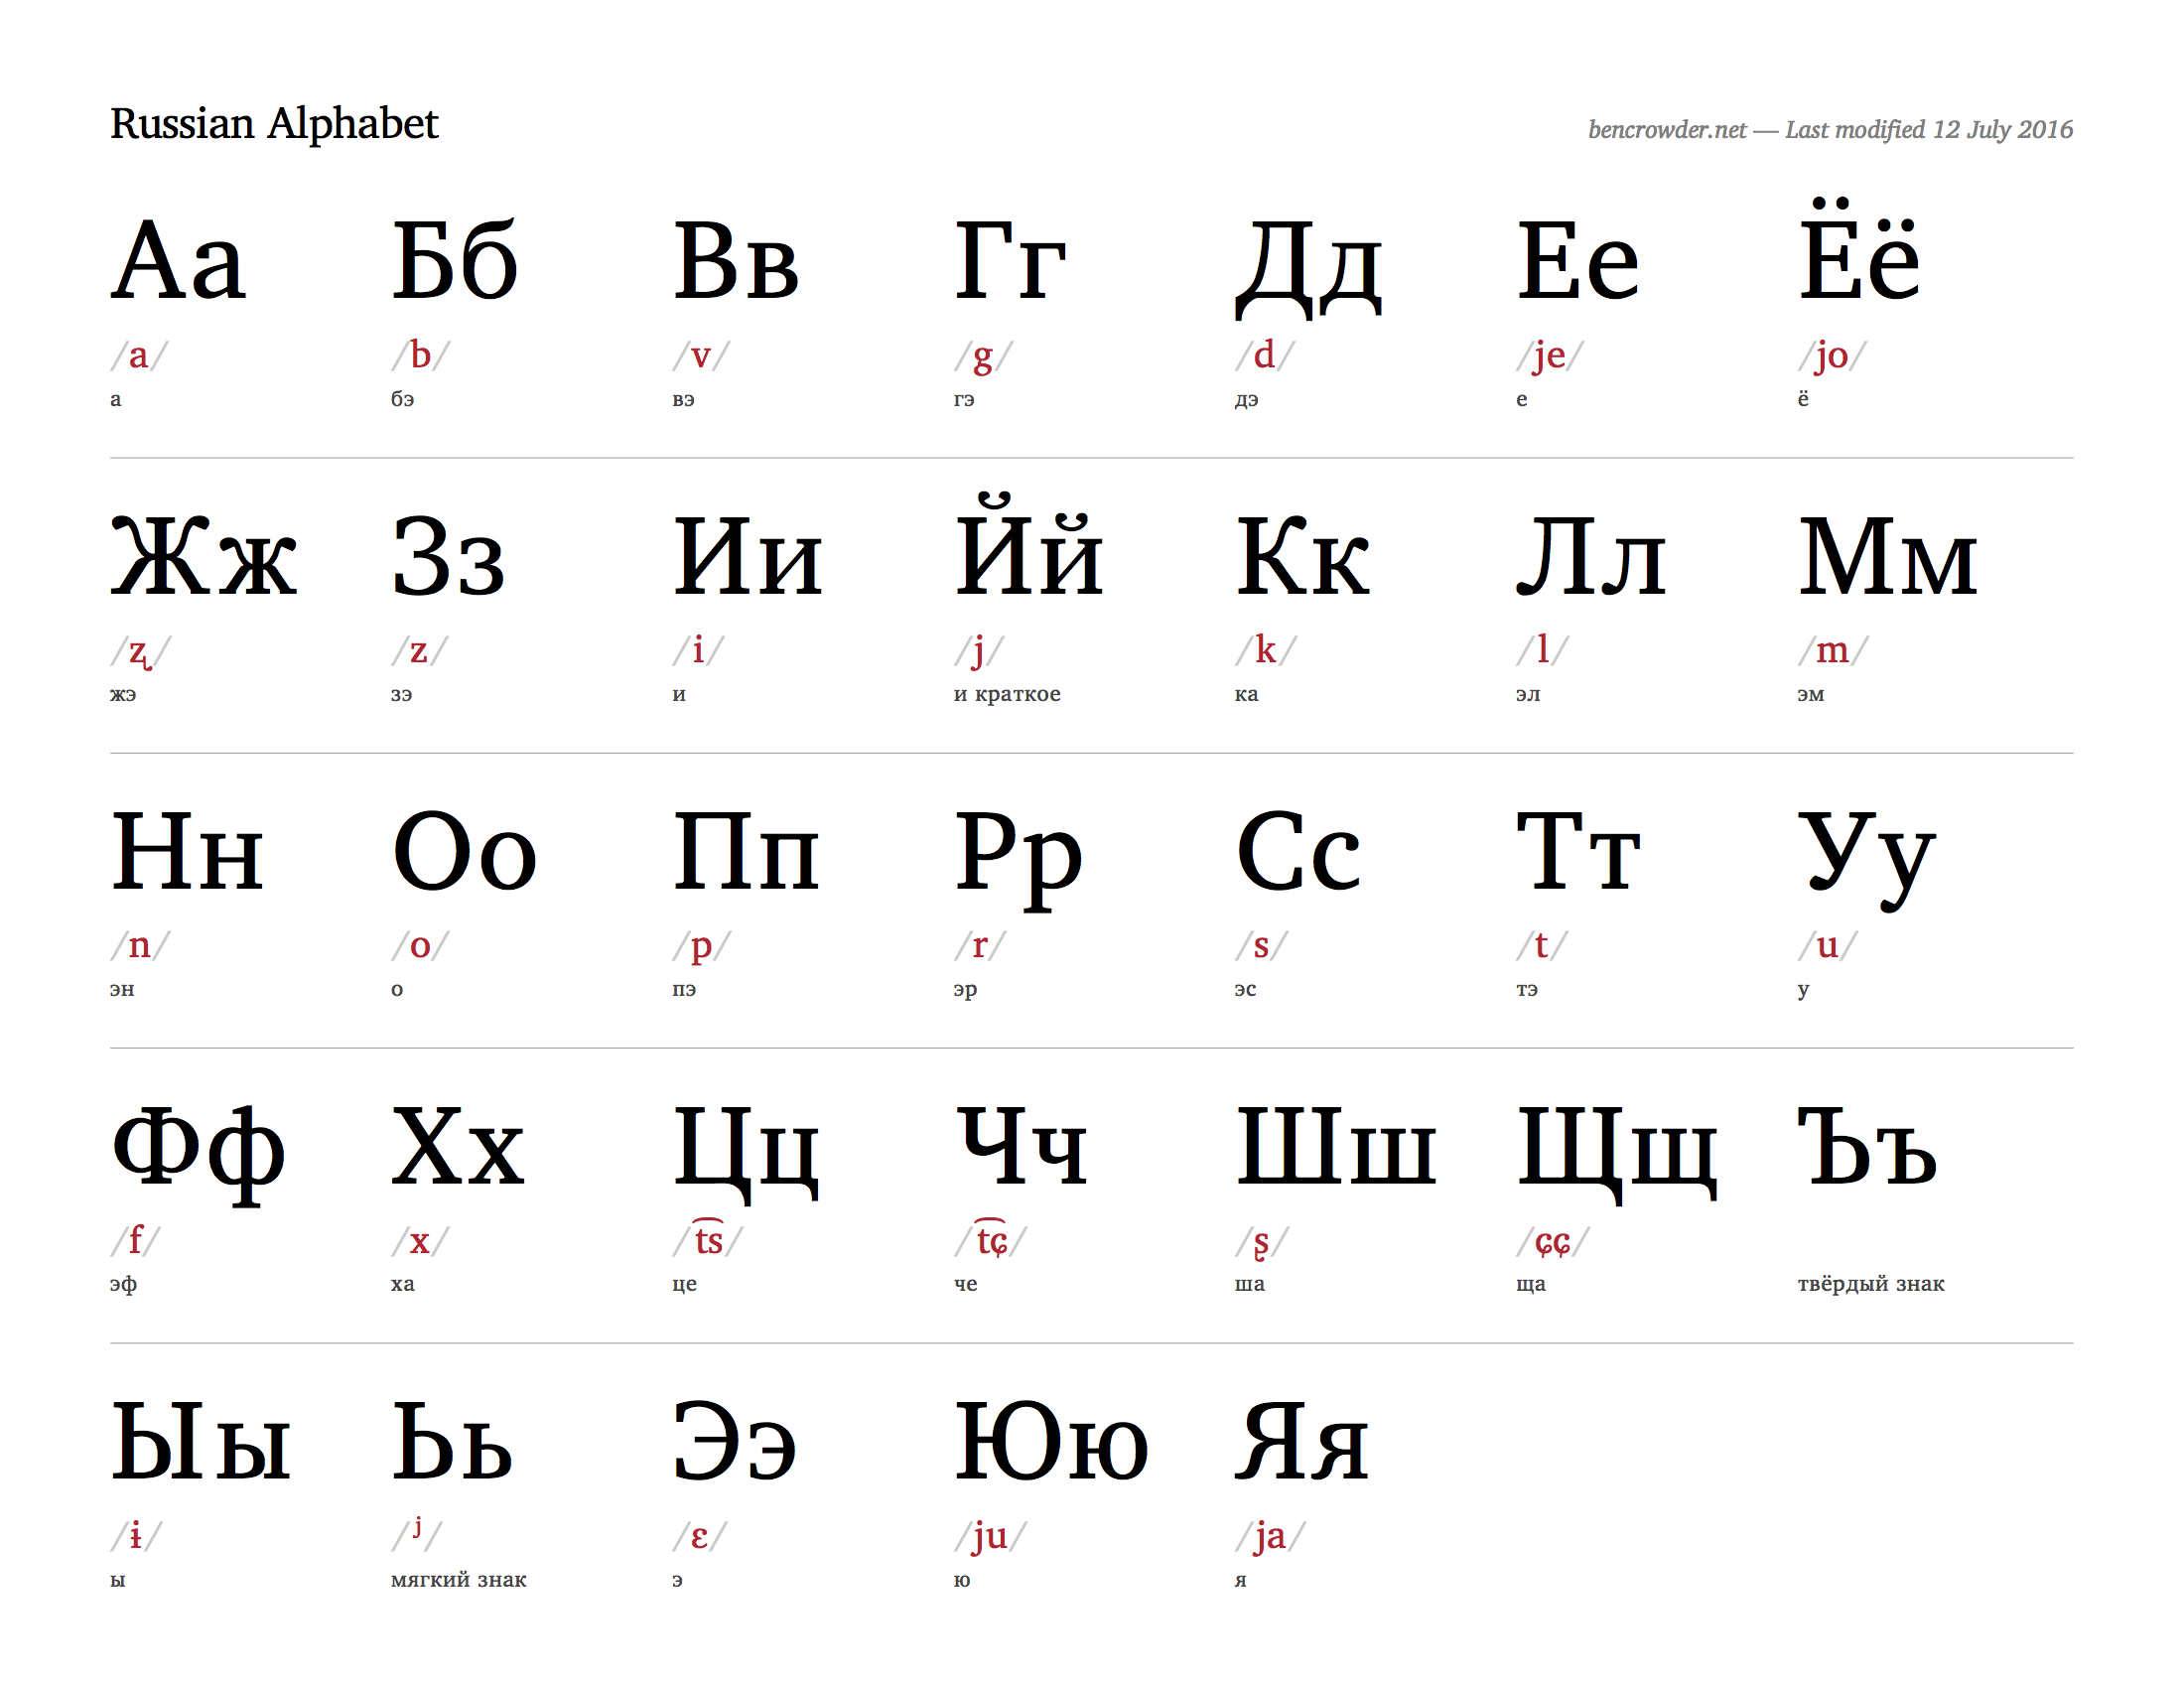 Russian alphabet chart — Blog — bencrowder.net